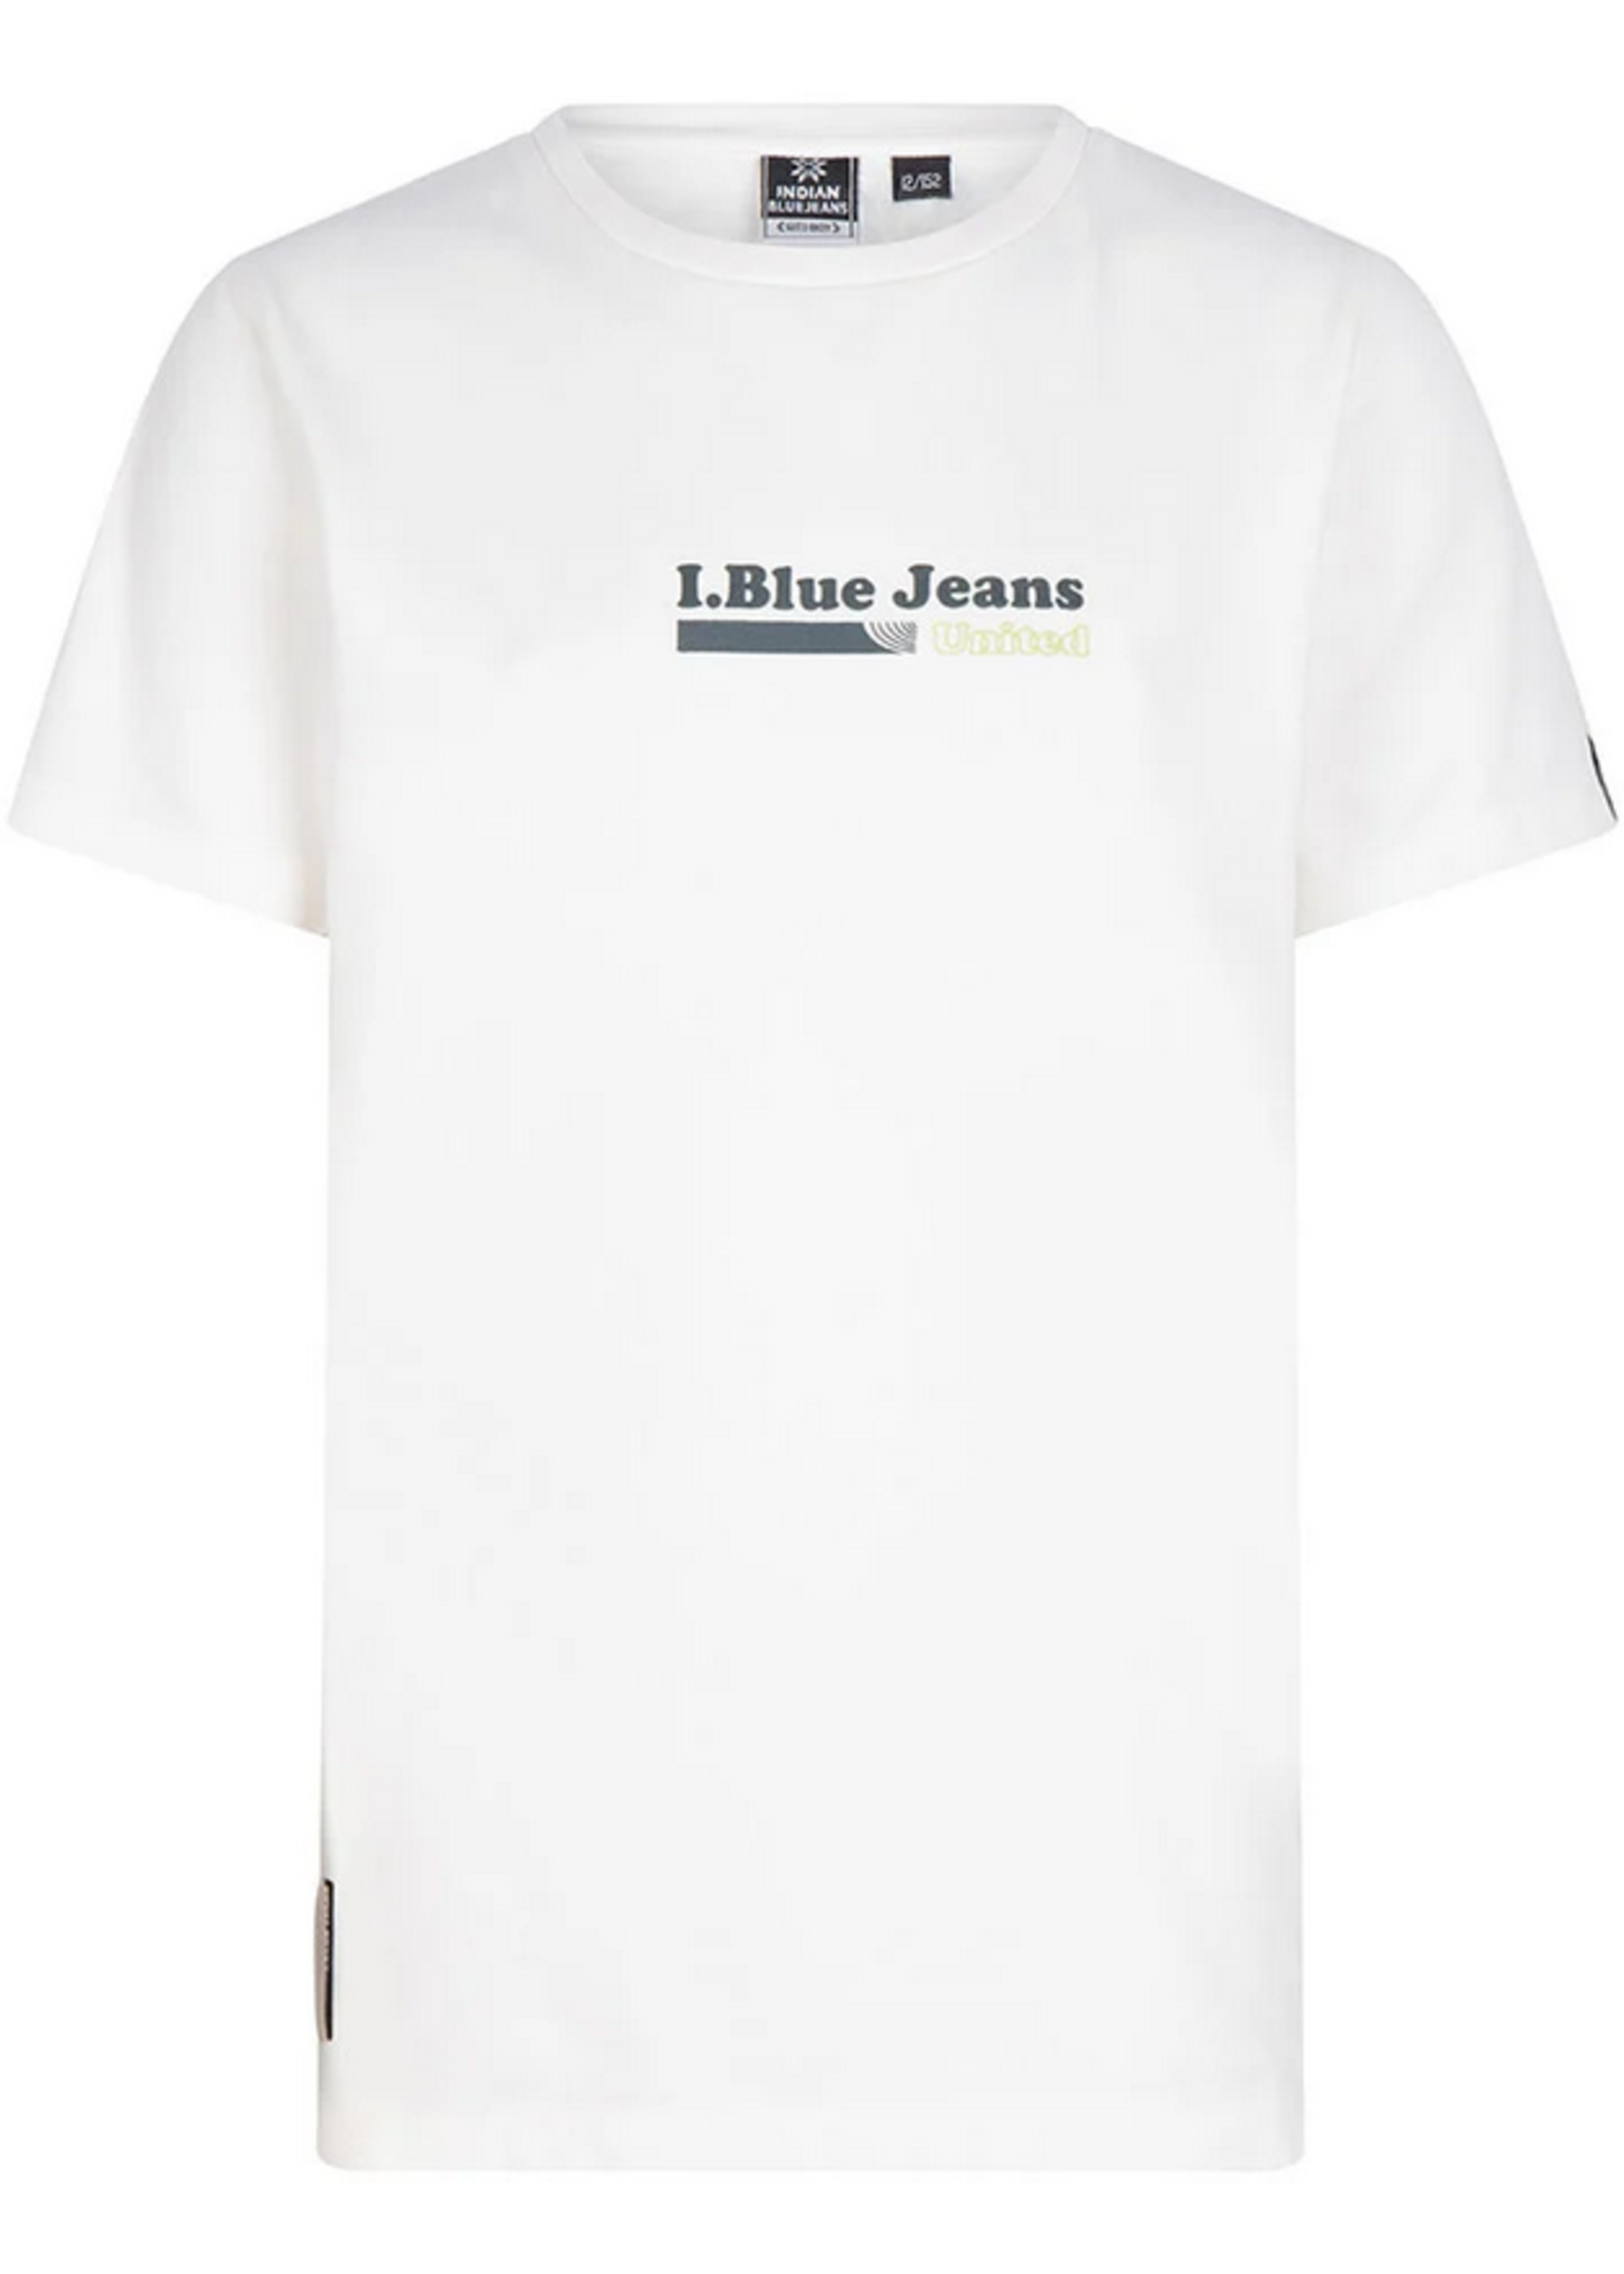 T-shirt pique bluejeans - Off white